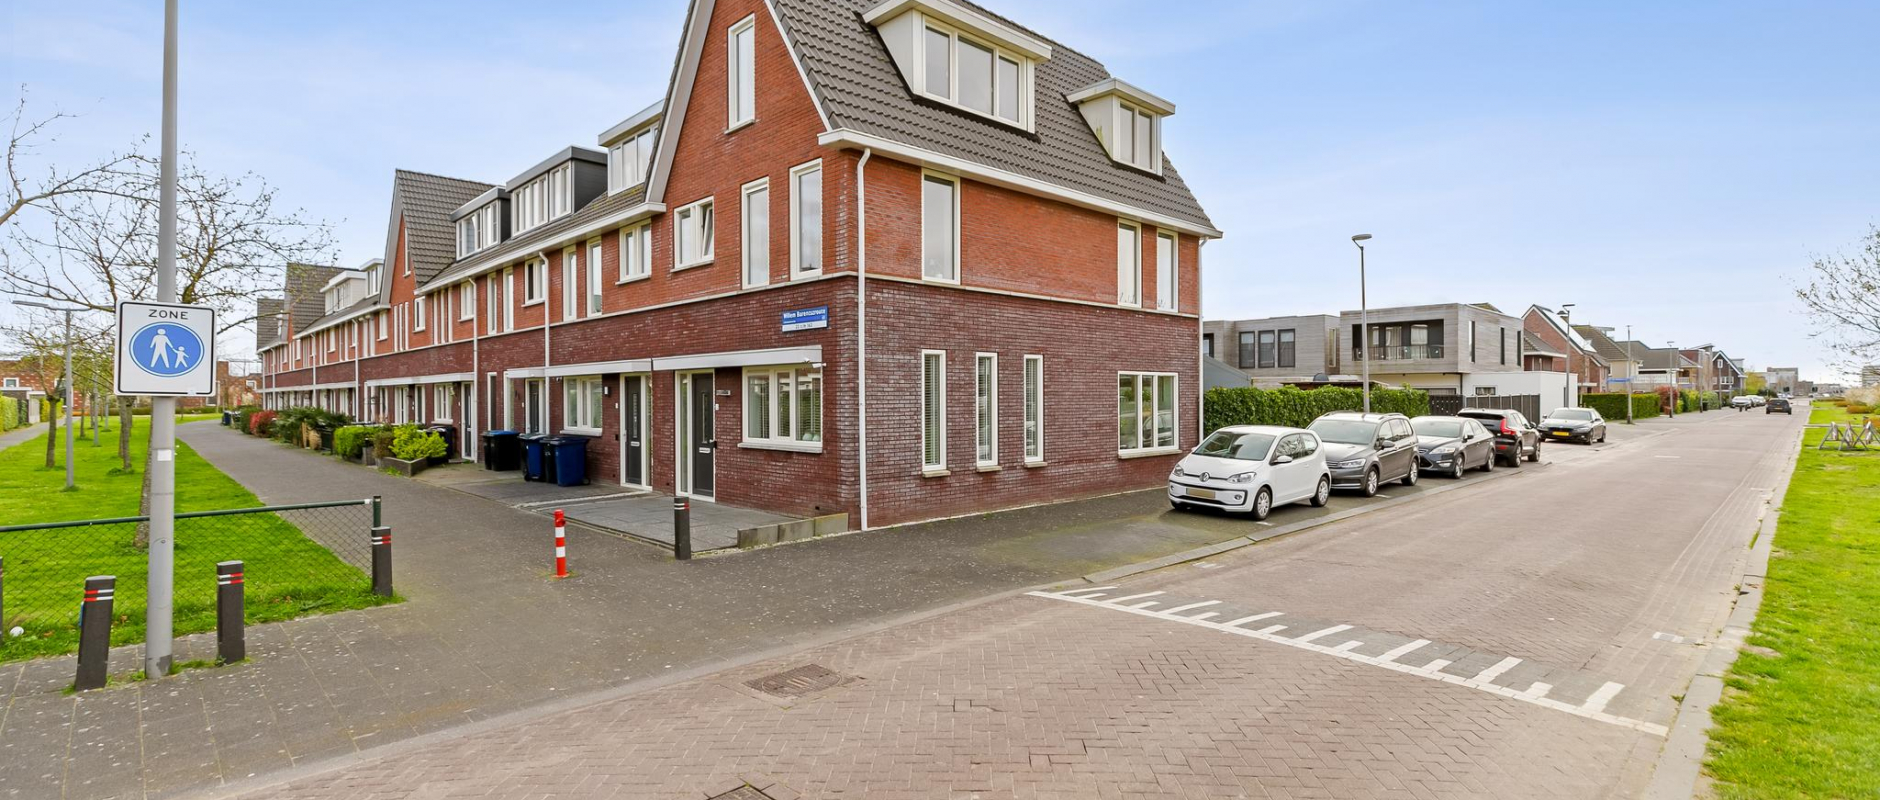 Woning te koop aan de Willem Barentszroute 22 te Almere